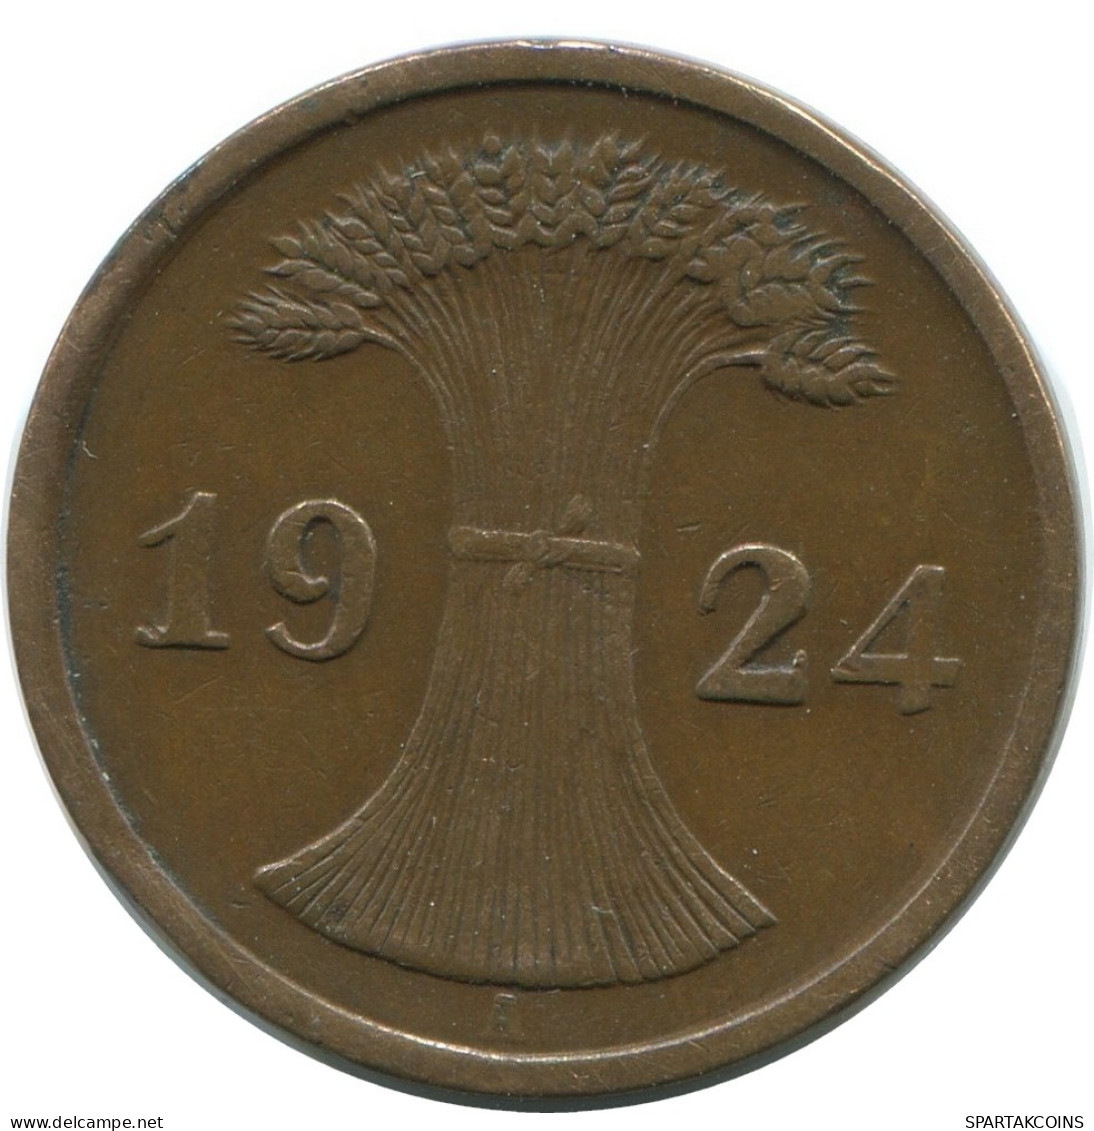 2 RENTENPFENNIG 1924 A GERMANY Coin #AD486.9.U - 2 Renten- & 2 Reichspfennig